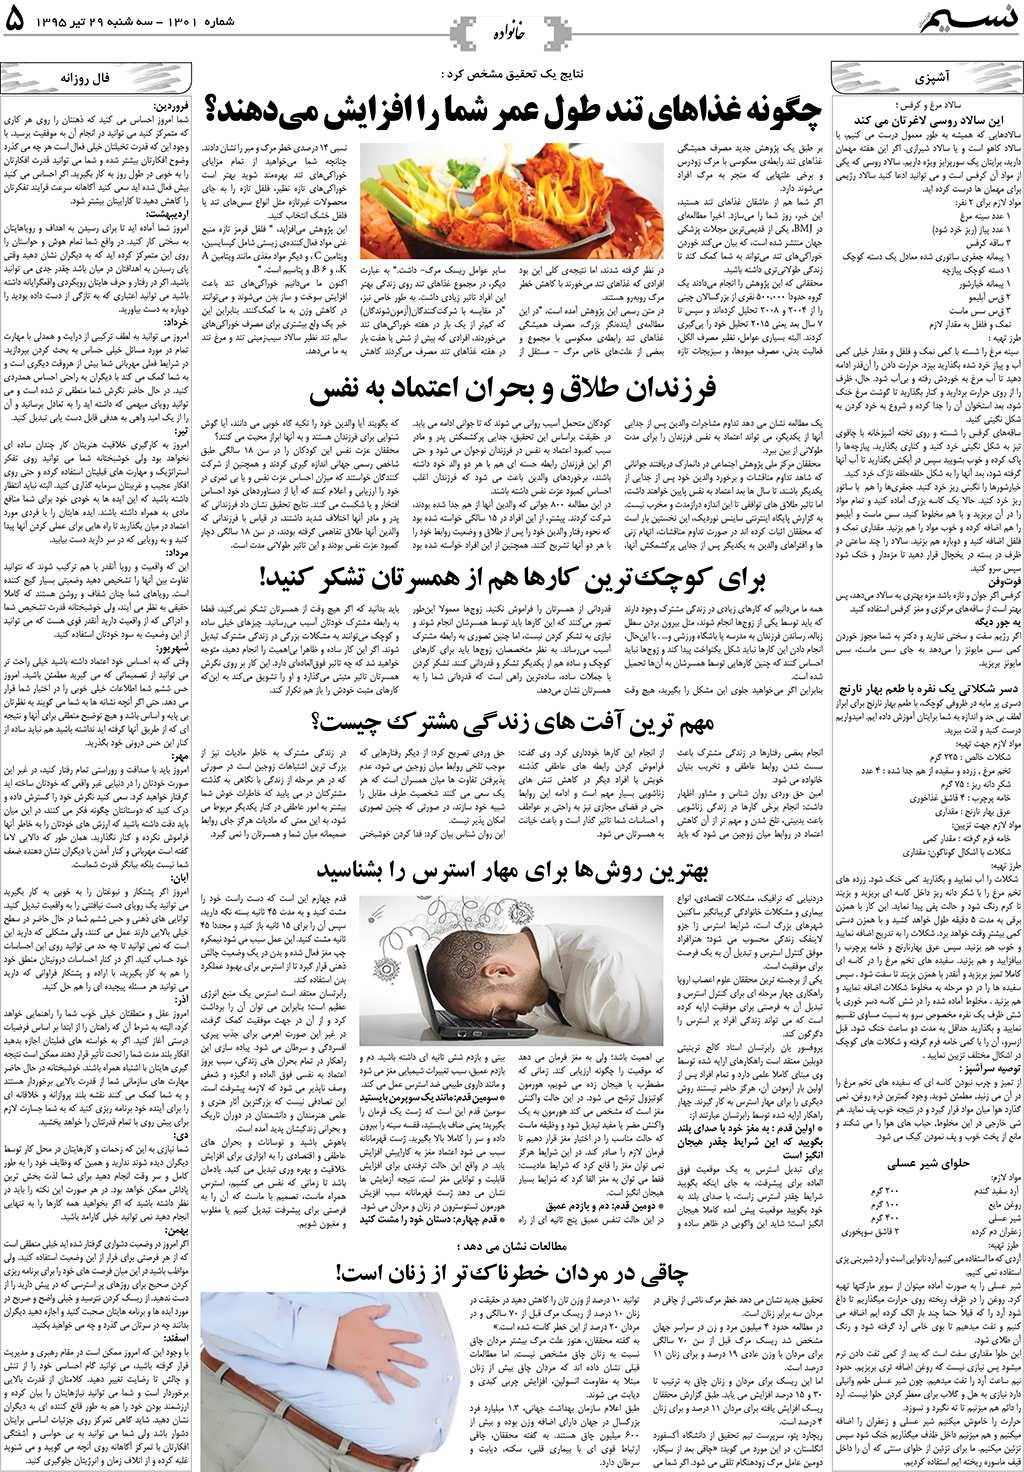 صفحه خانواده روزنامه نسیم شماره 1301